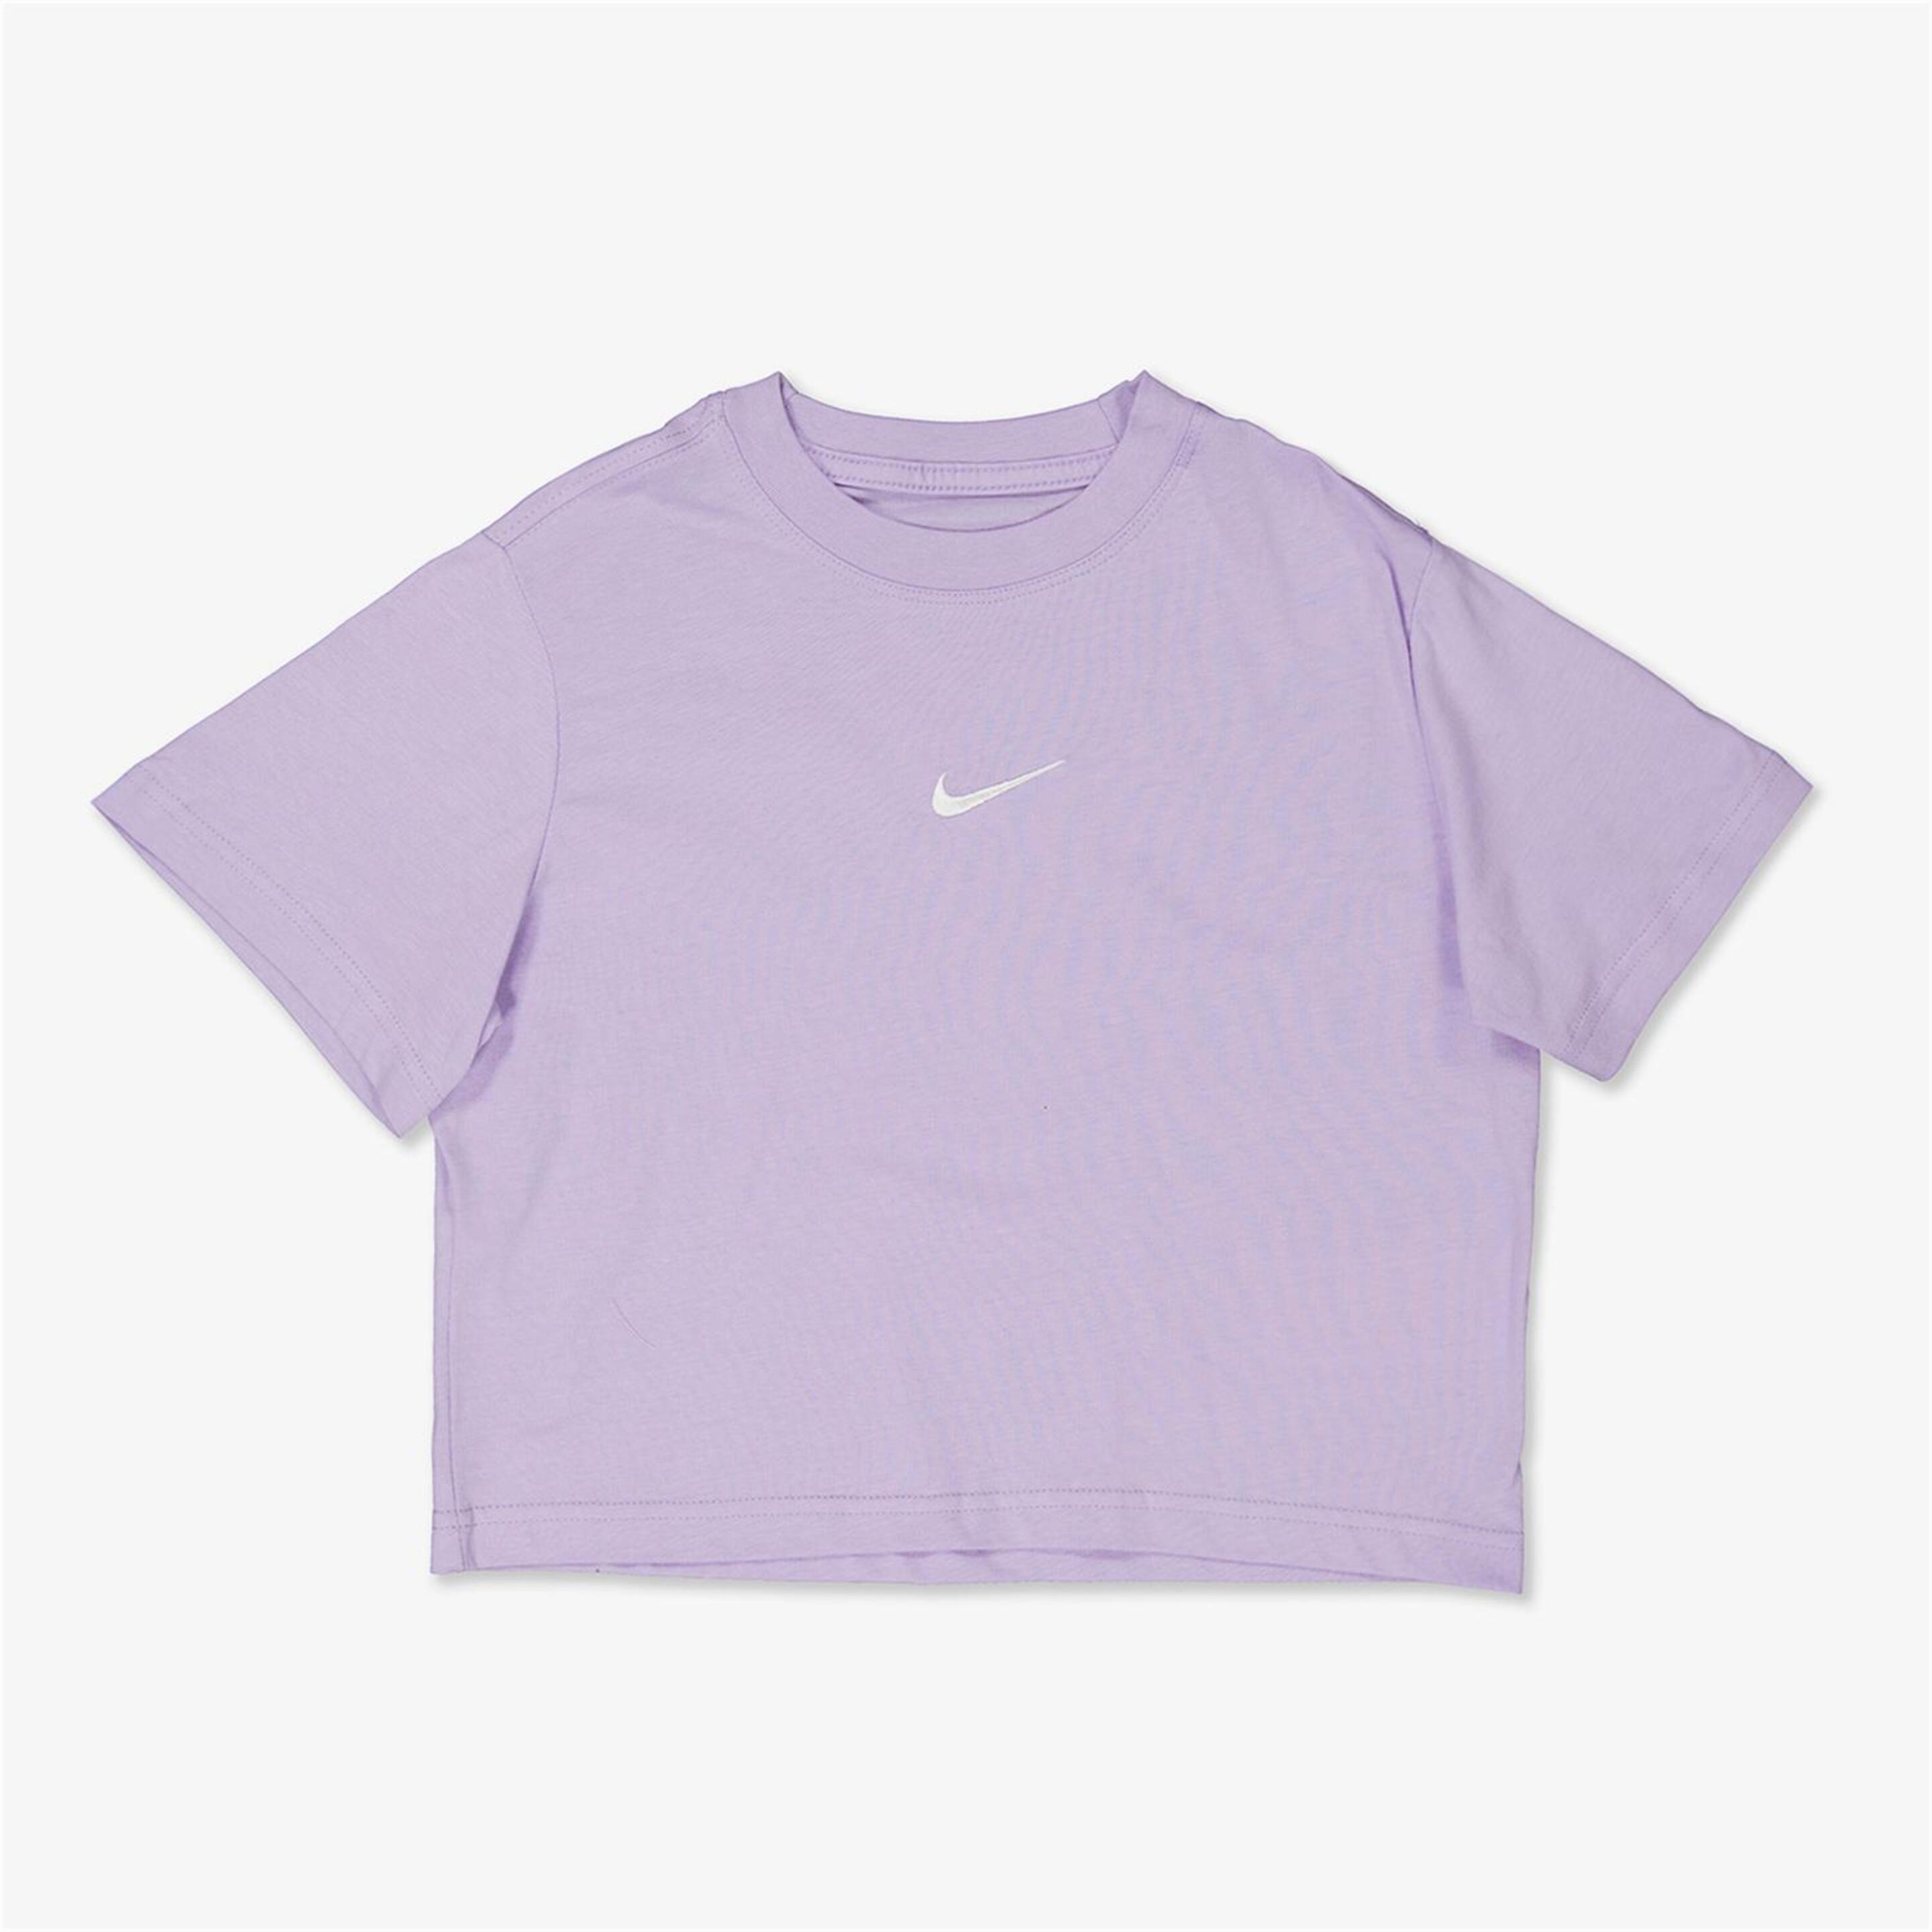 Camiseta Nike - Malva - Camiseta Niña